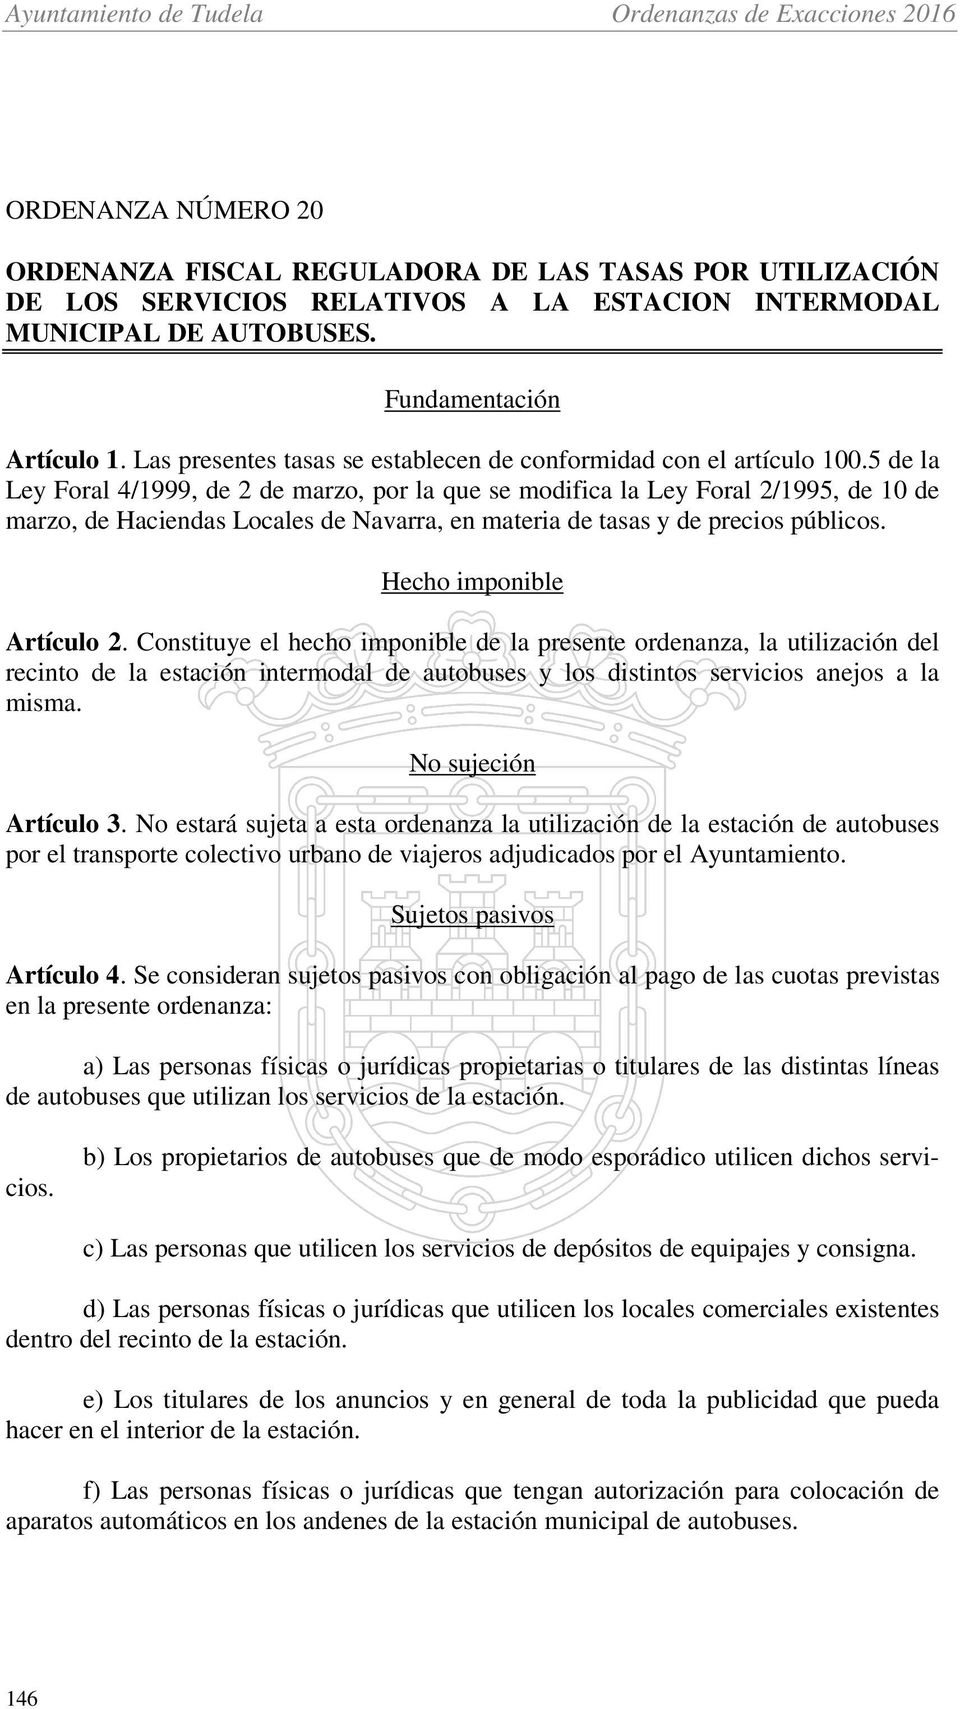 5 de la Ley Foral 4/1999, de 2 de marzo, por la que se modifica la Ley Foral 2/1995, de 10 de marzo, de Haciendas Locales de Navarra, en materia de tasas y de precios públicos.